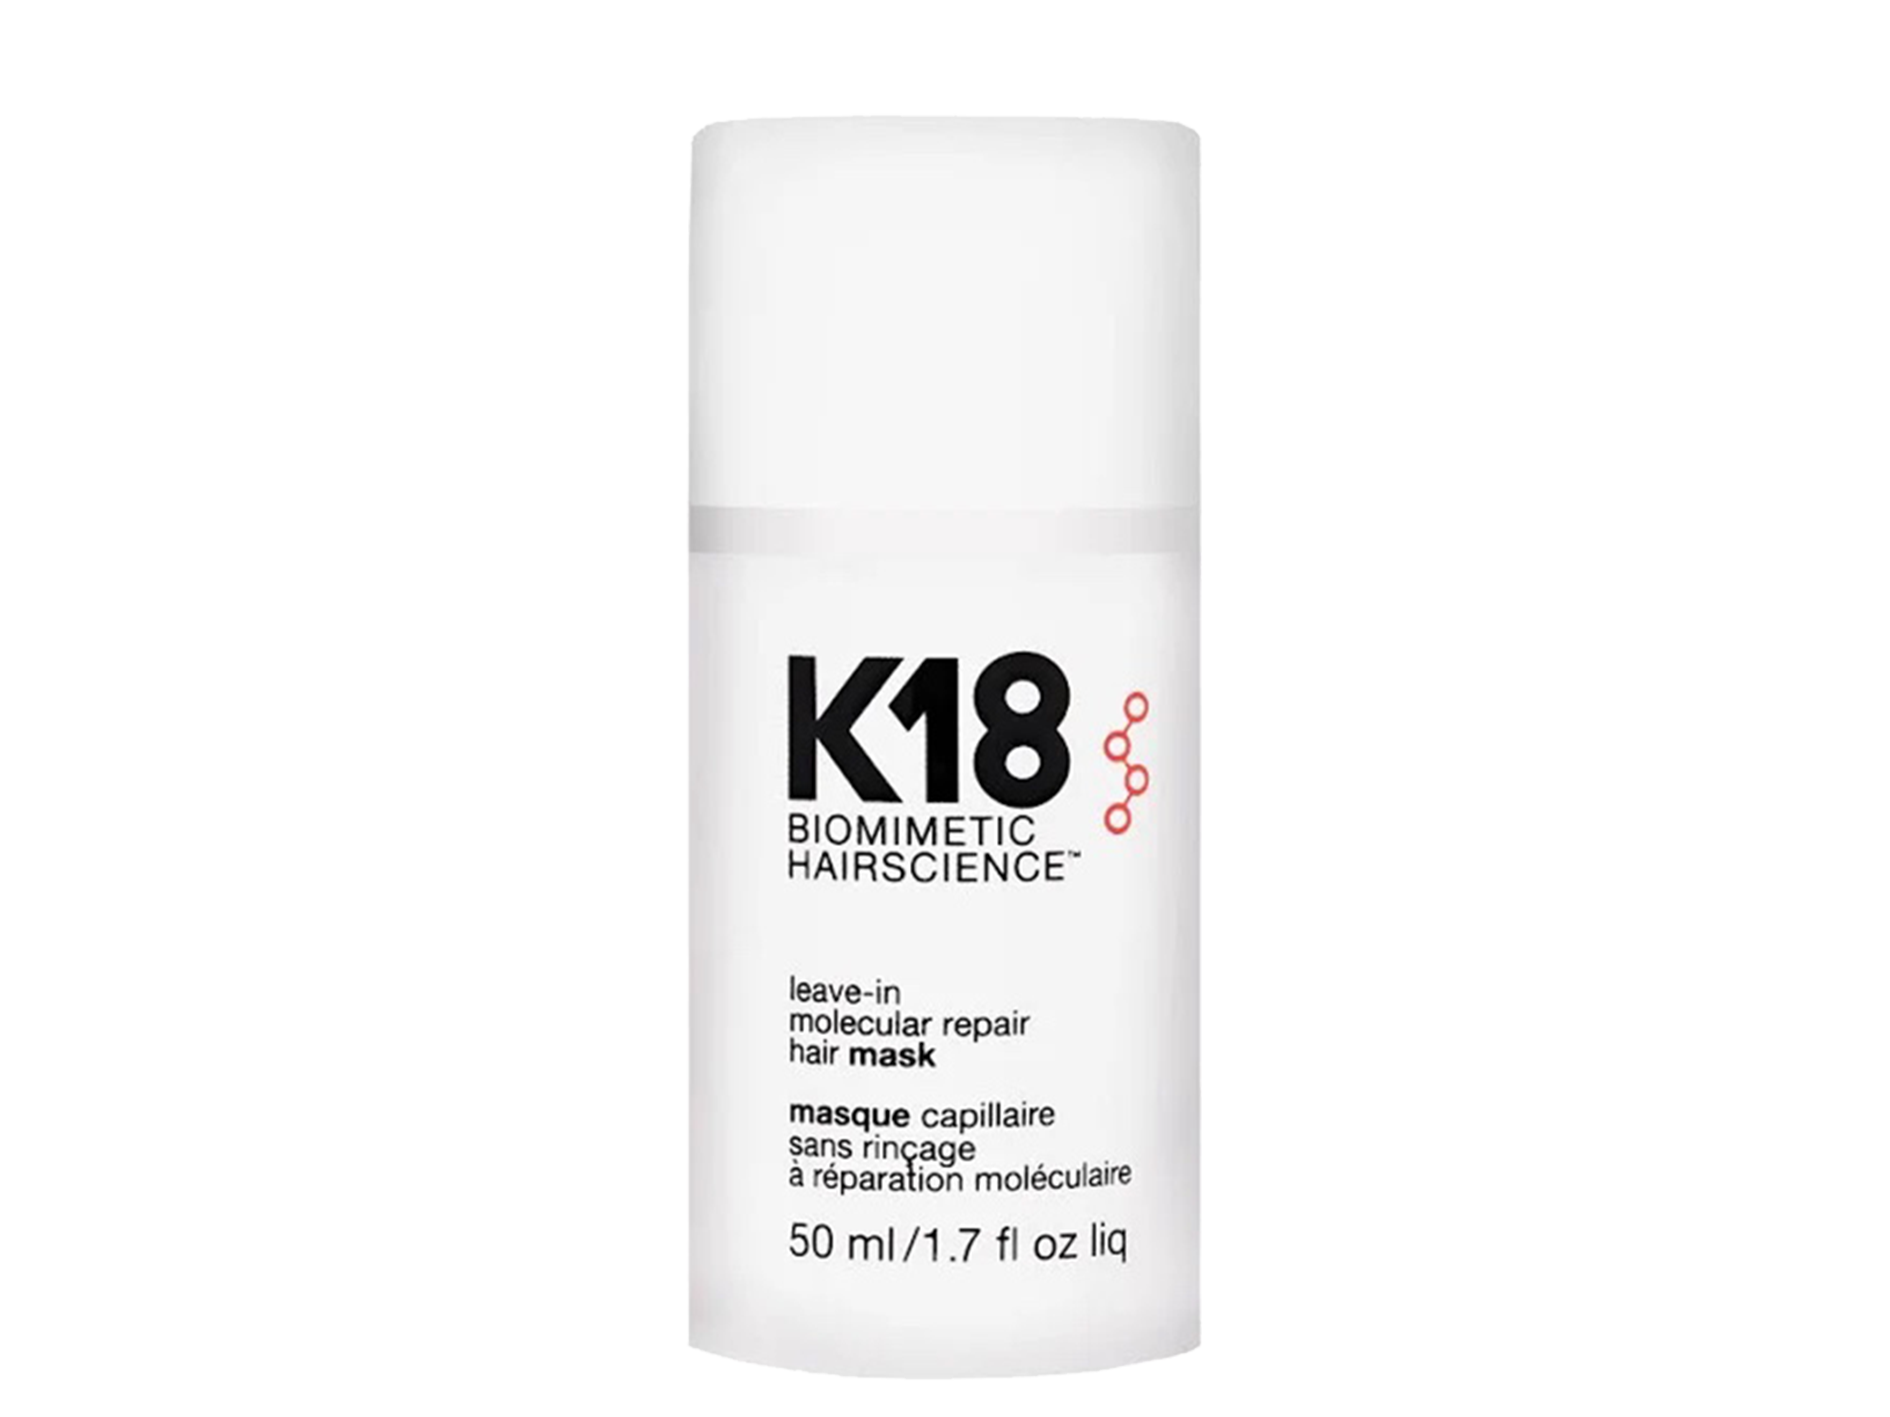 K18 4-minute leave-in treatment reverses hair damage | Leave-In Molecular Repair Hair Mask 50ml